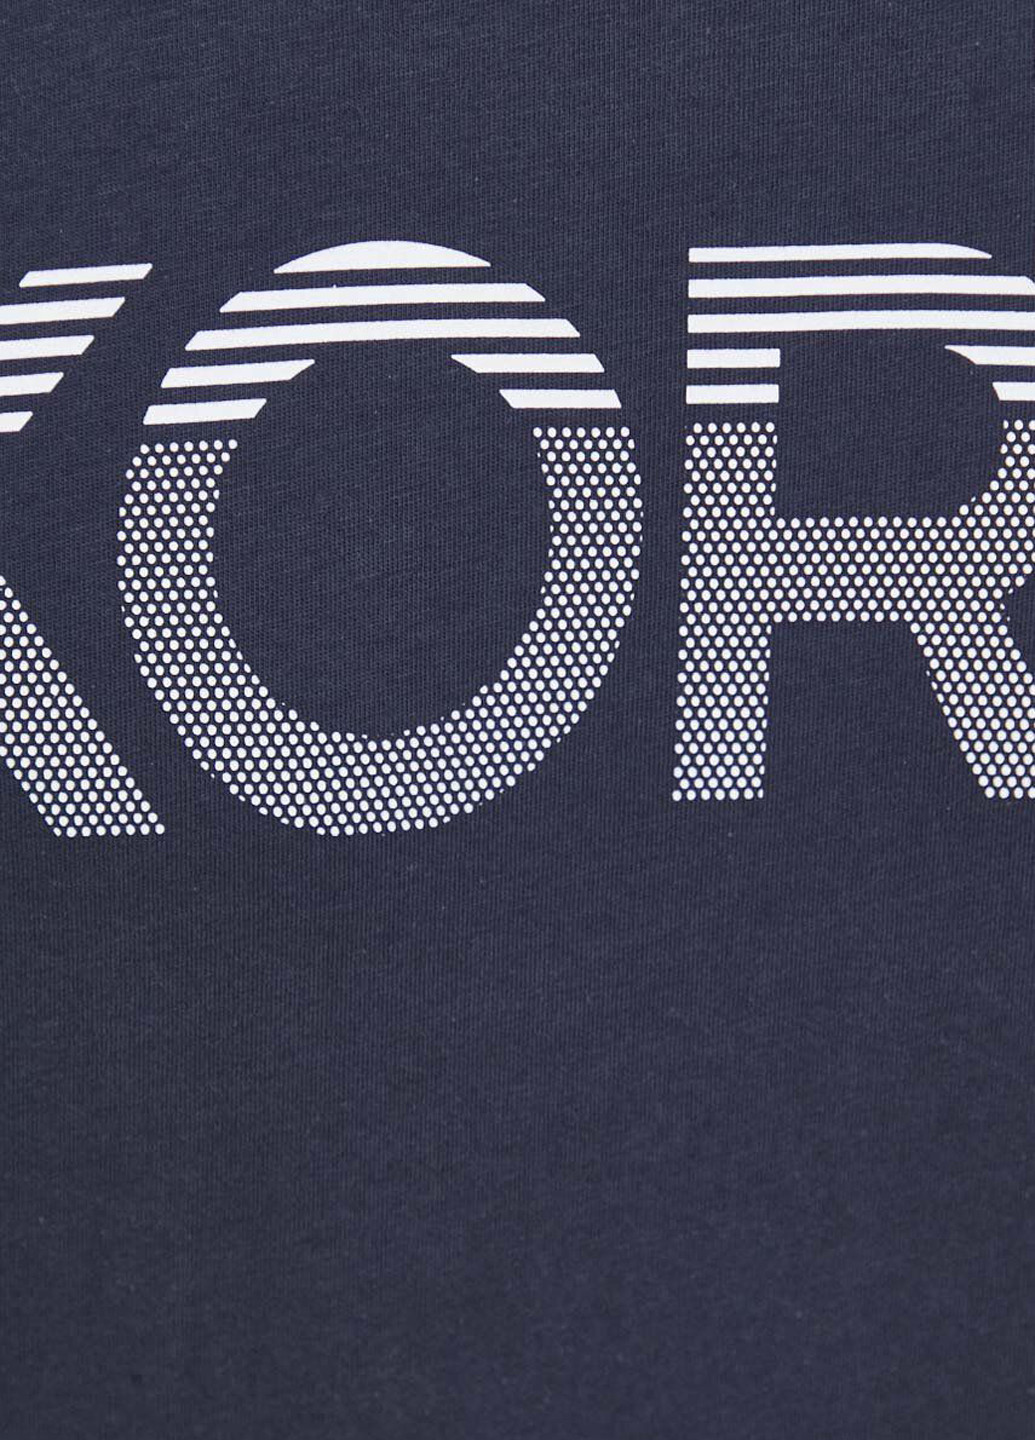 Темно-синяя футболка Michael Kors